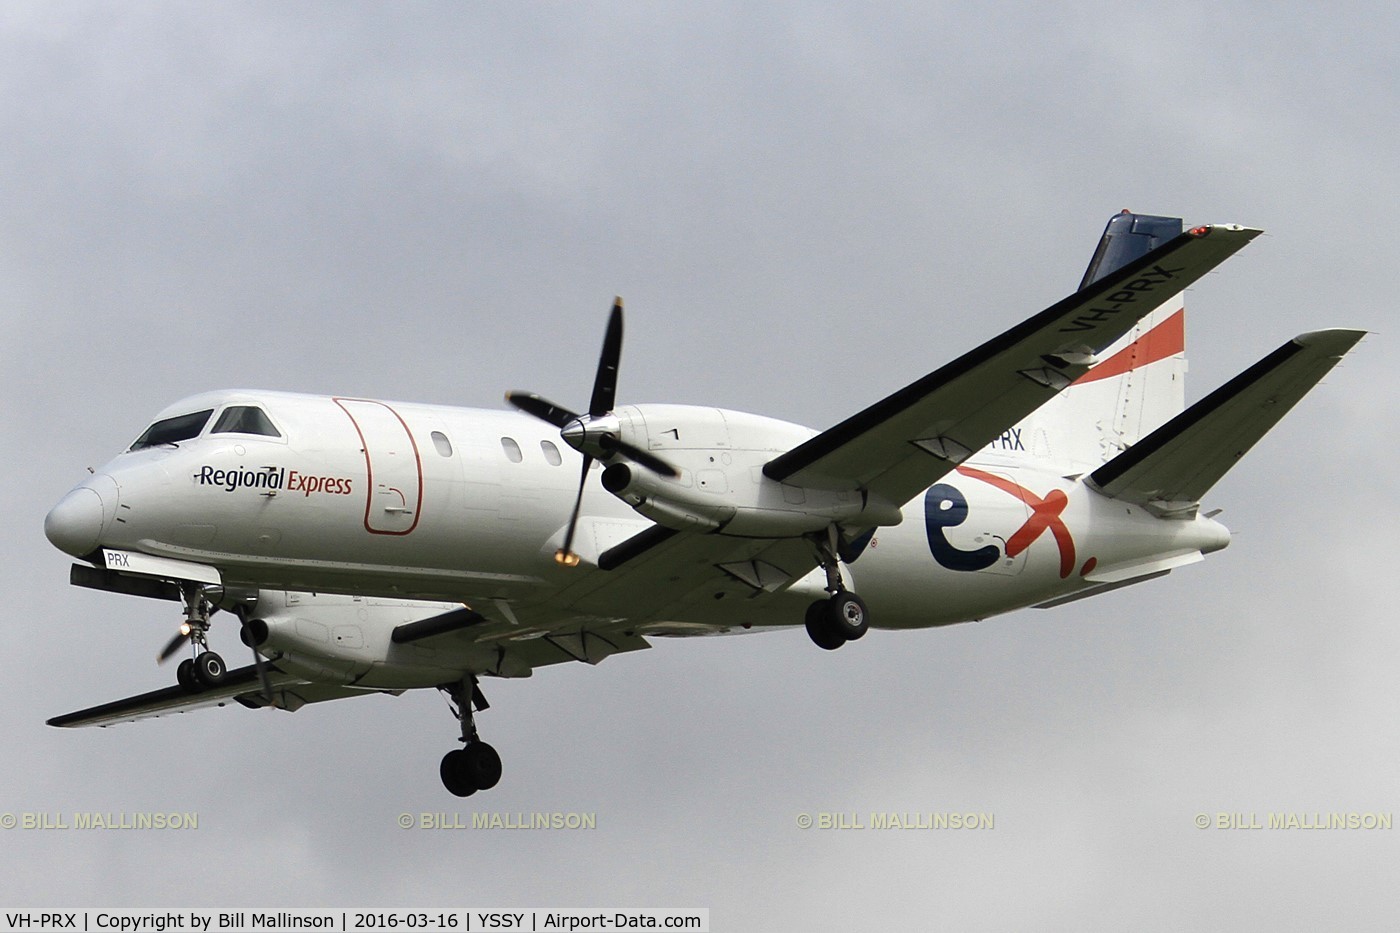 VH-PRX, 1992 Saab 340B C/N 340B-303, finals to 16R